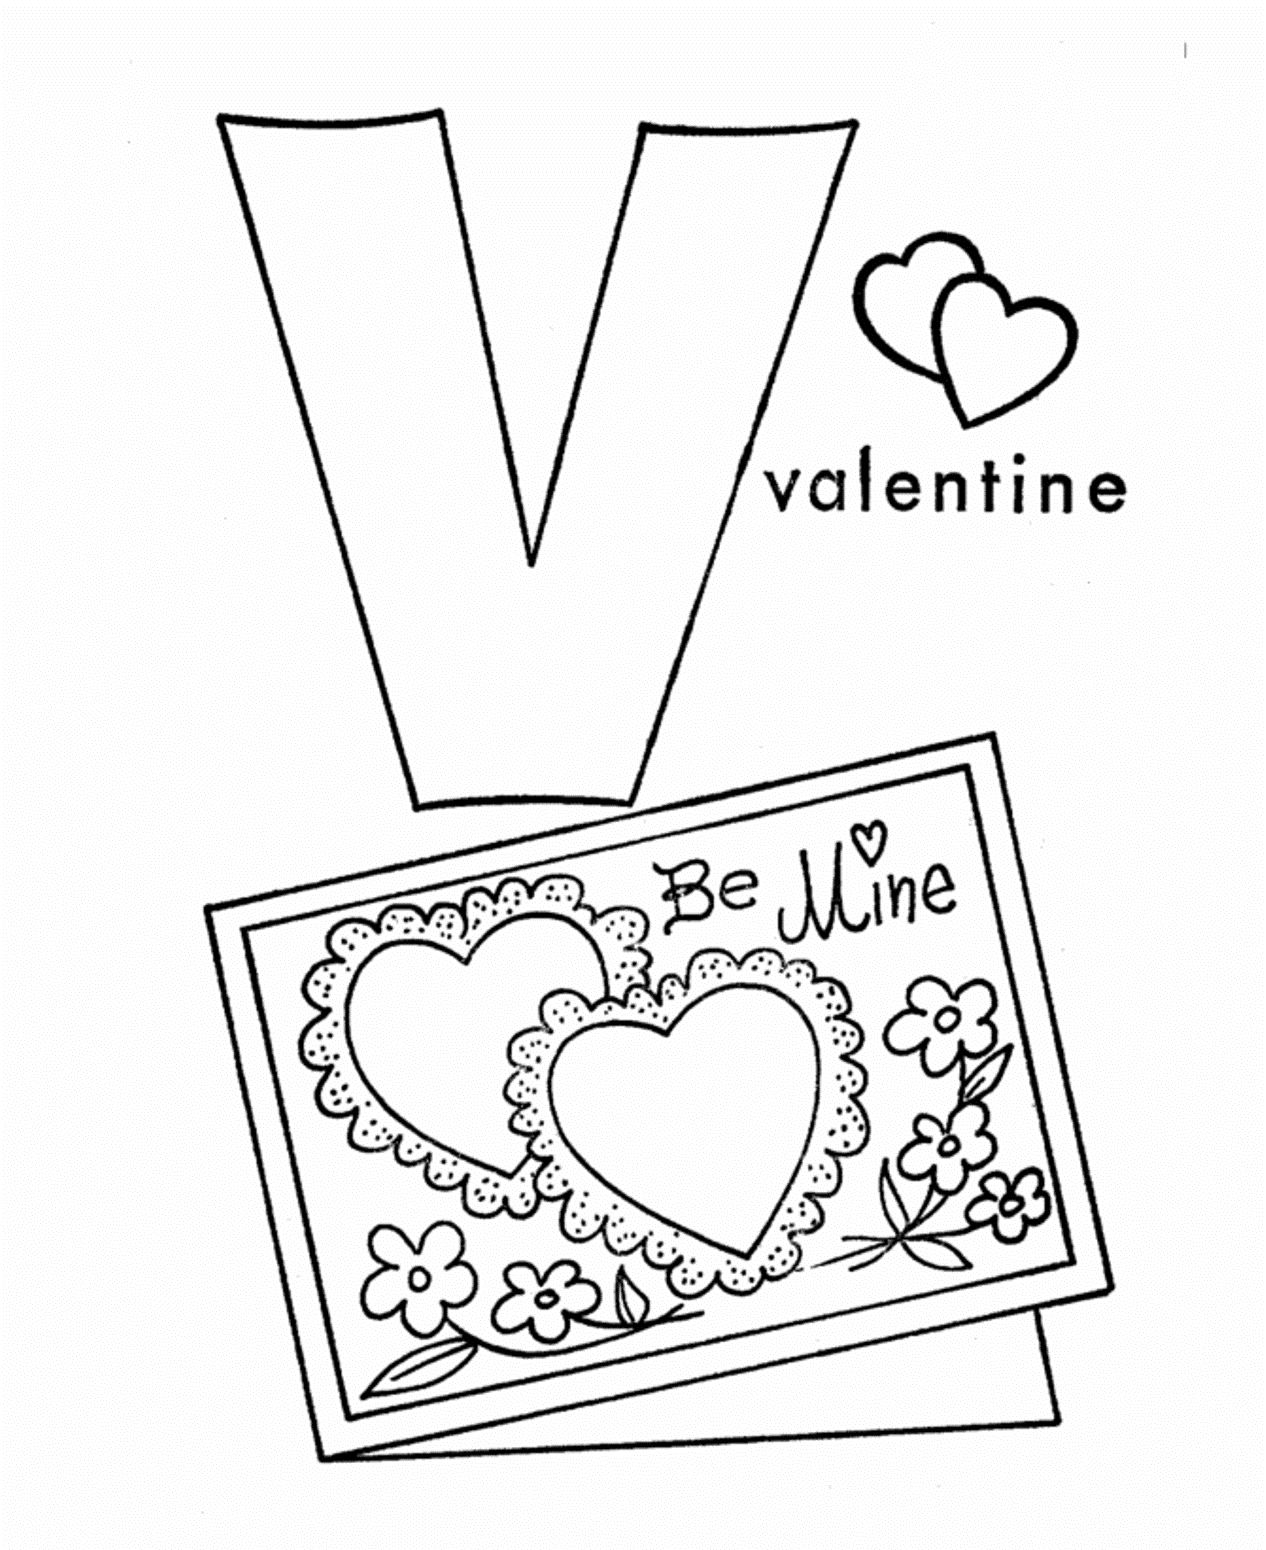 V For Valentine